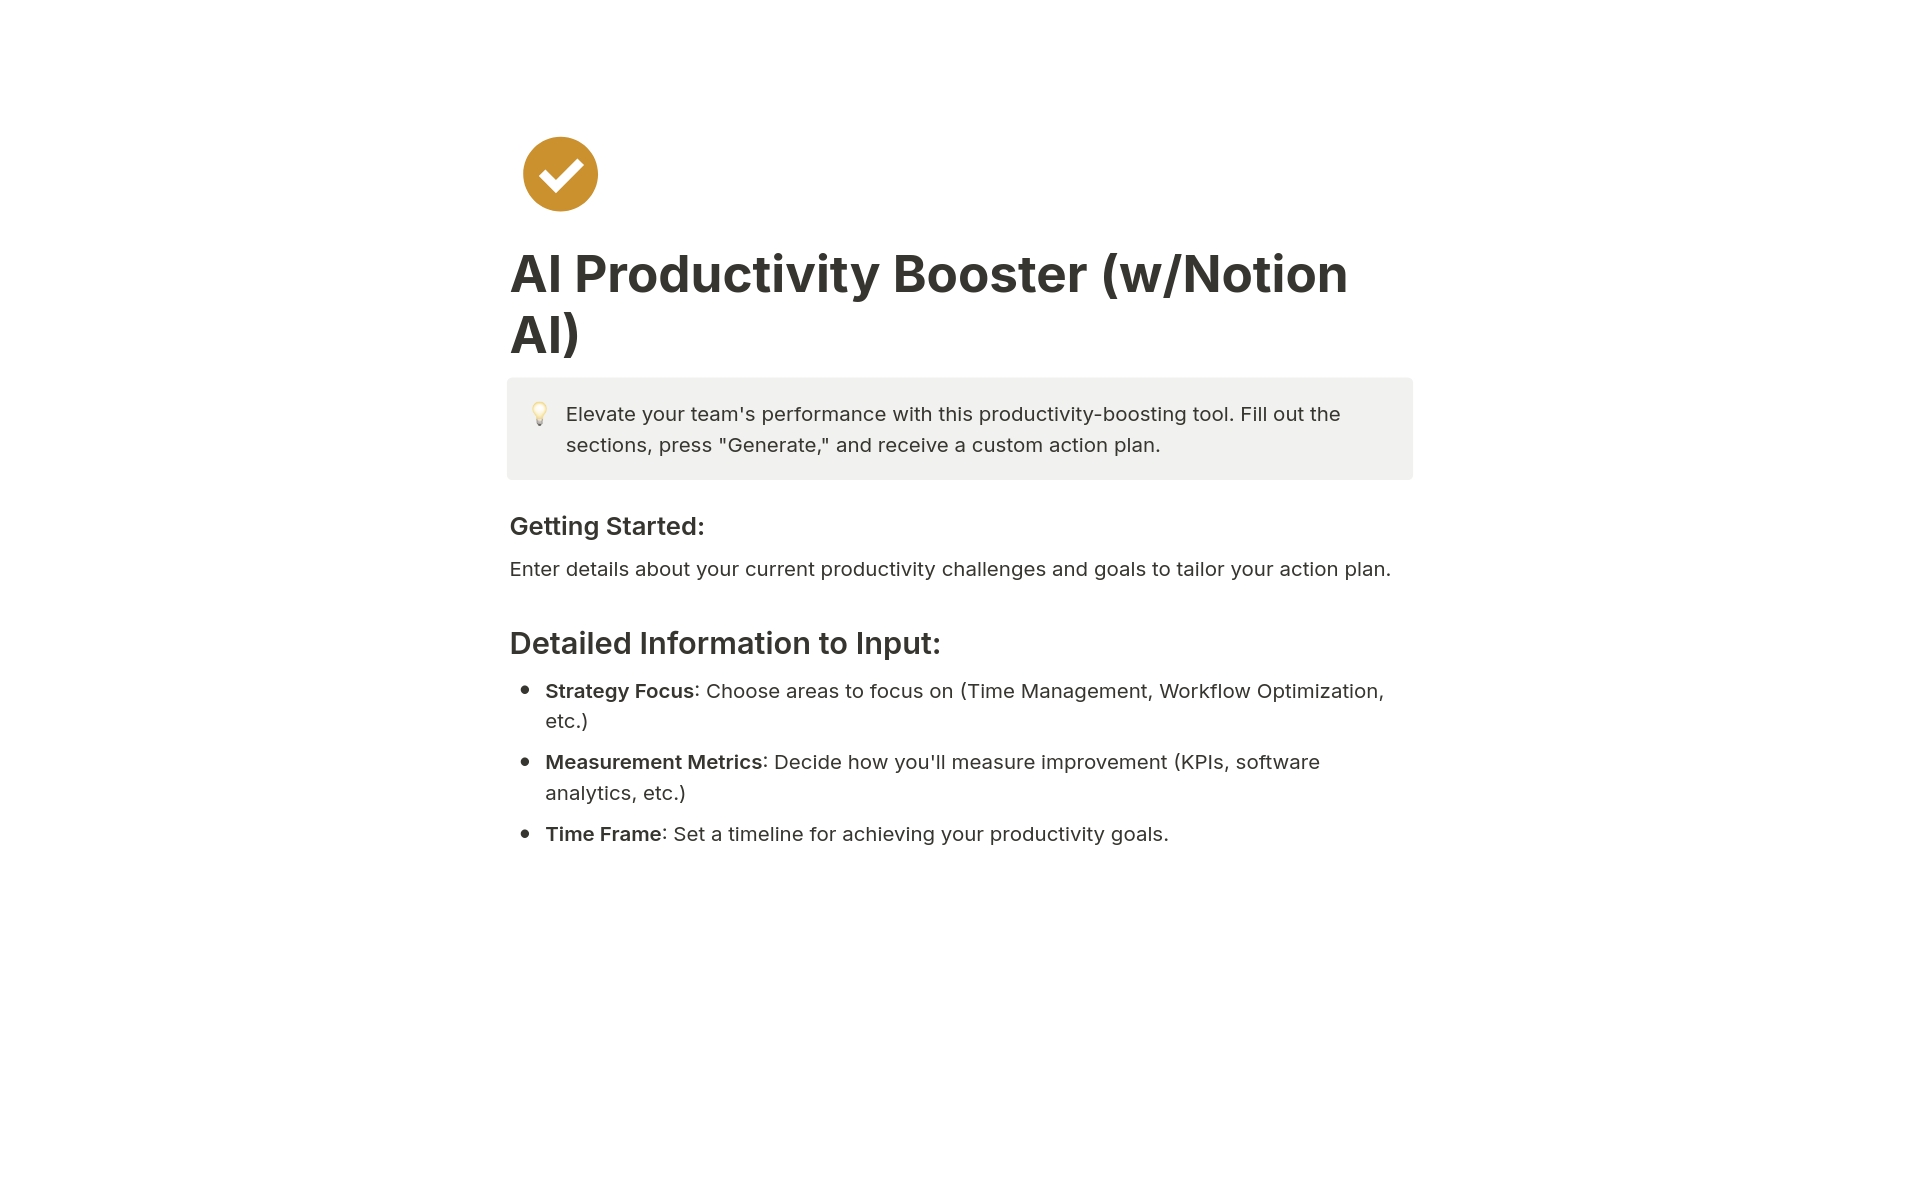 Vista previa de una plantilla para AI Productivity Booster